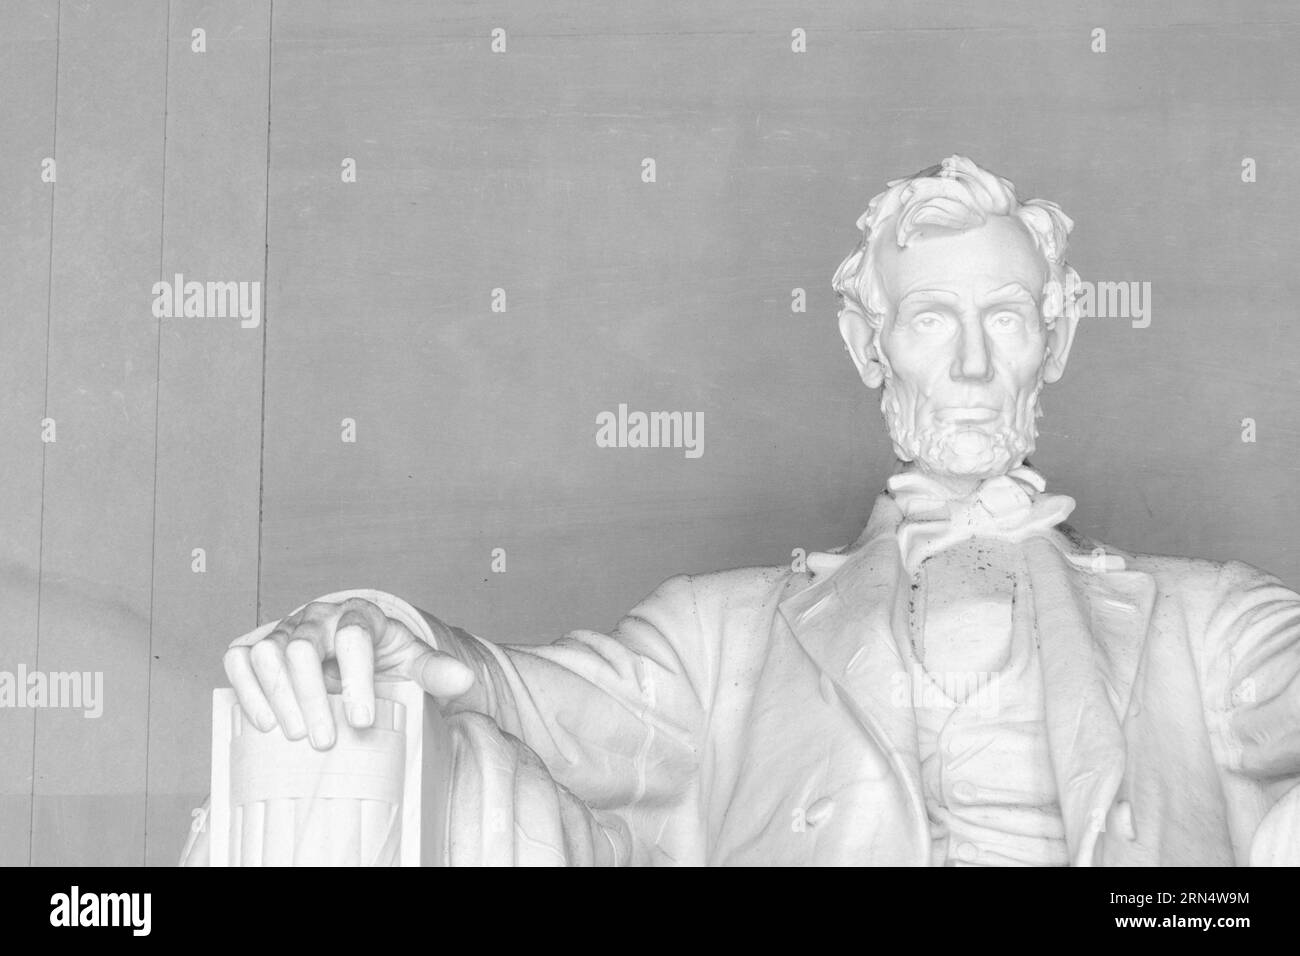 WASHINGTON, DC - il Lincoln Memorial si trova all'estremità occidentale del National Mall di Washington DC. Si affaccia direttamente ad est verso il Washington Monument e il Campidoglio degli Stati Uniti. Progettata nella forma di un tempio neoclassico, la sua camera principale è dominata da una grande statua di un presidente seduto Abraham Lincoln. Fu progettato da Daniel Chester French e completato nel 1920. Il Lincoln Memorial è stato dedicato nel maggio 1922. Foto Stock